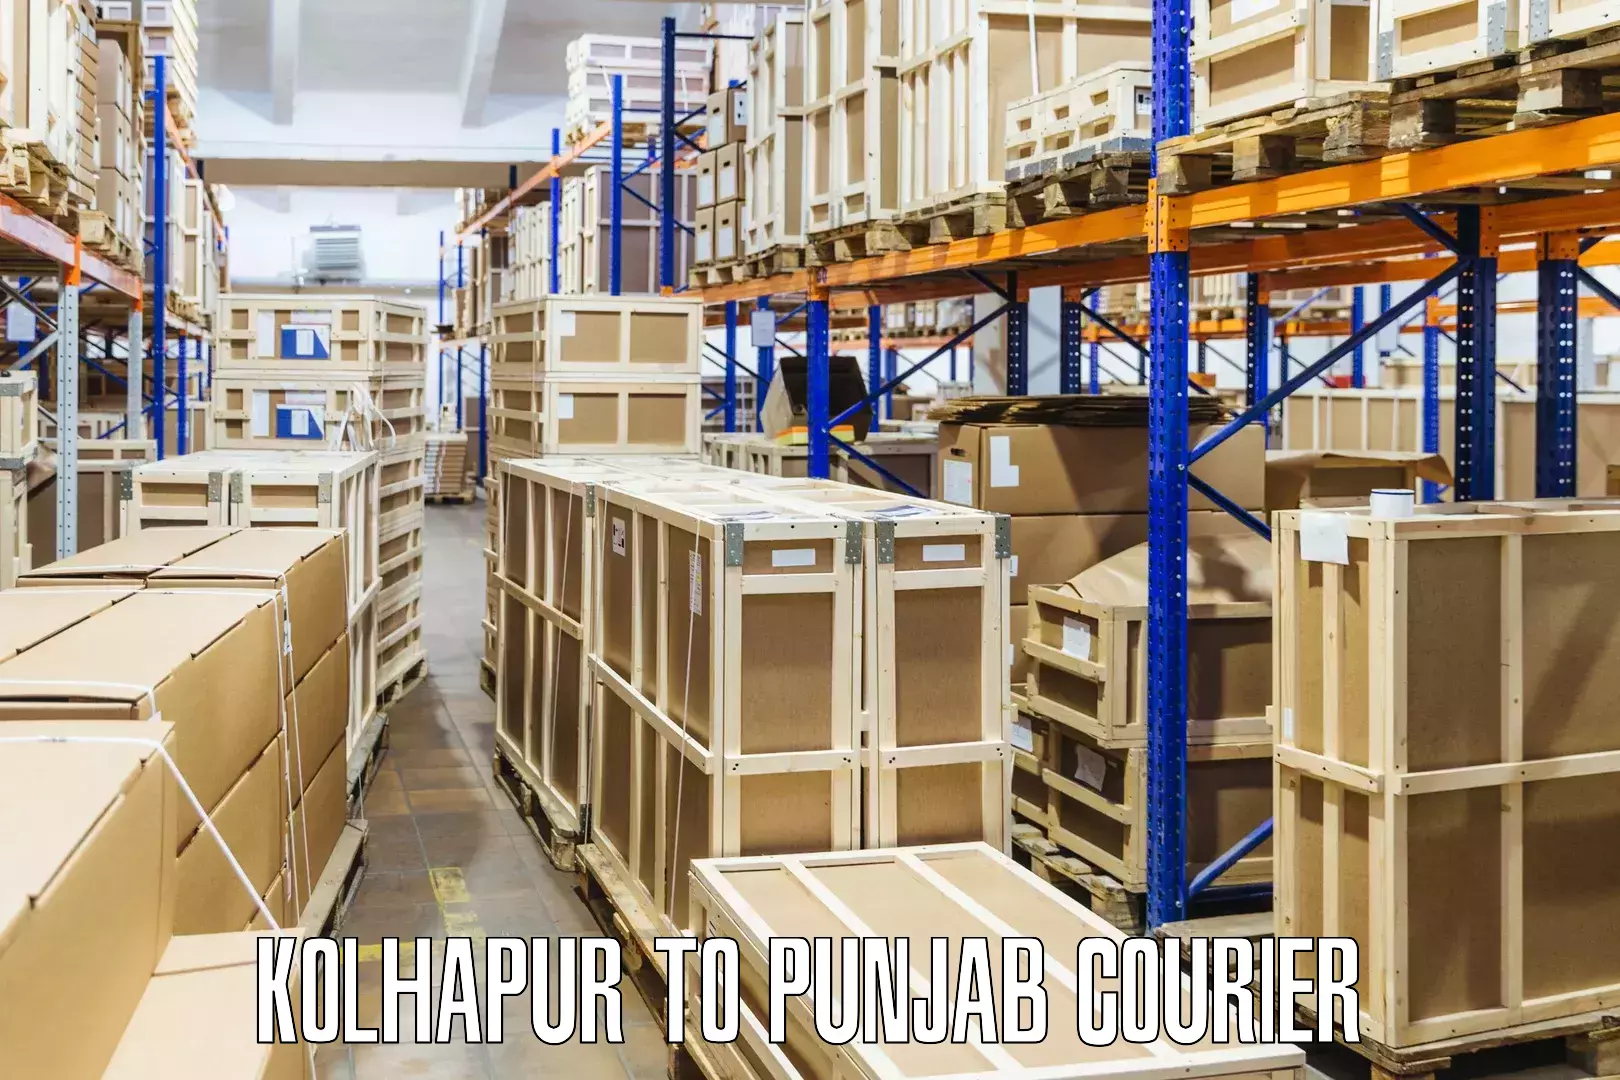 Global parcel delivery Kolhapur to Punjab